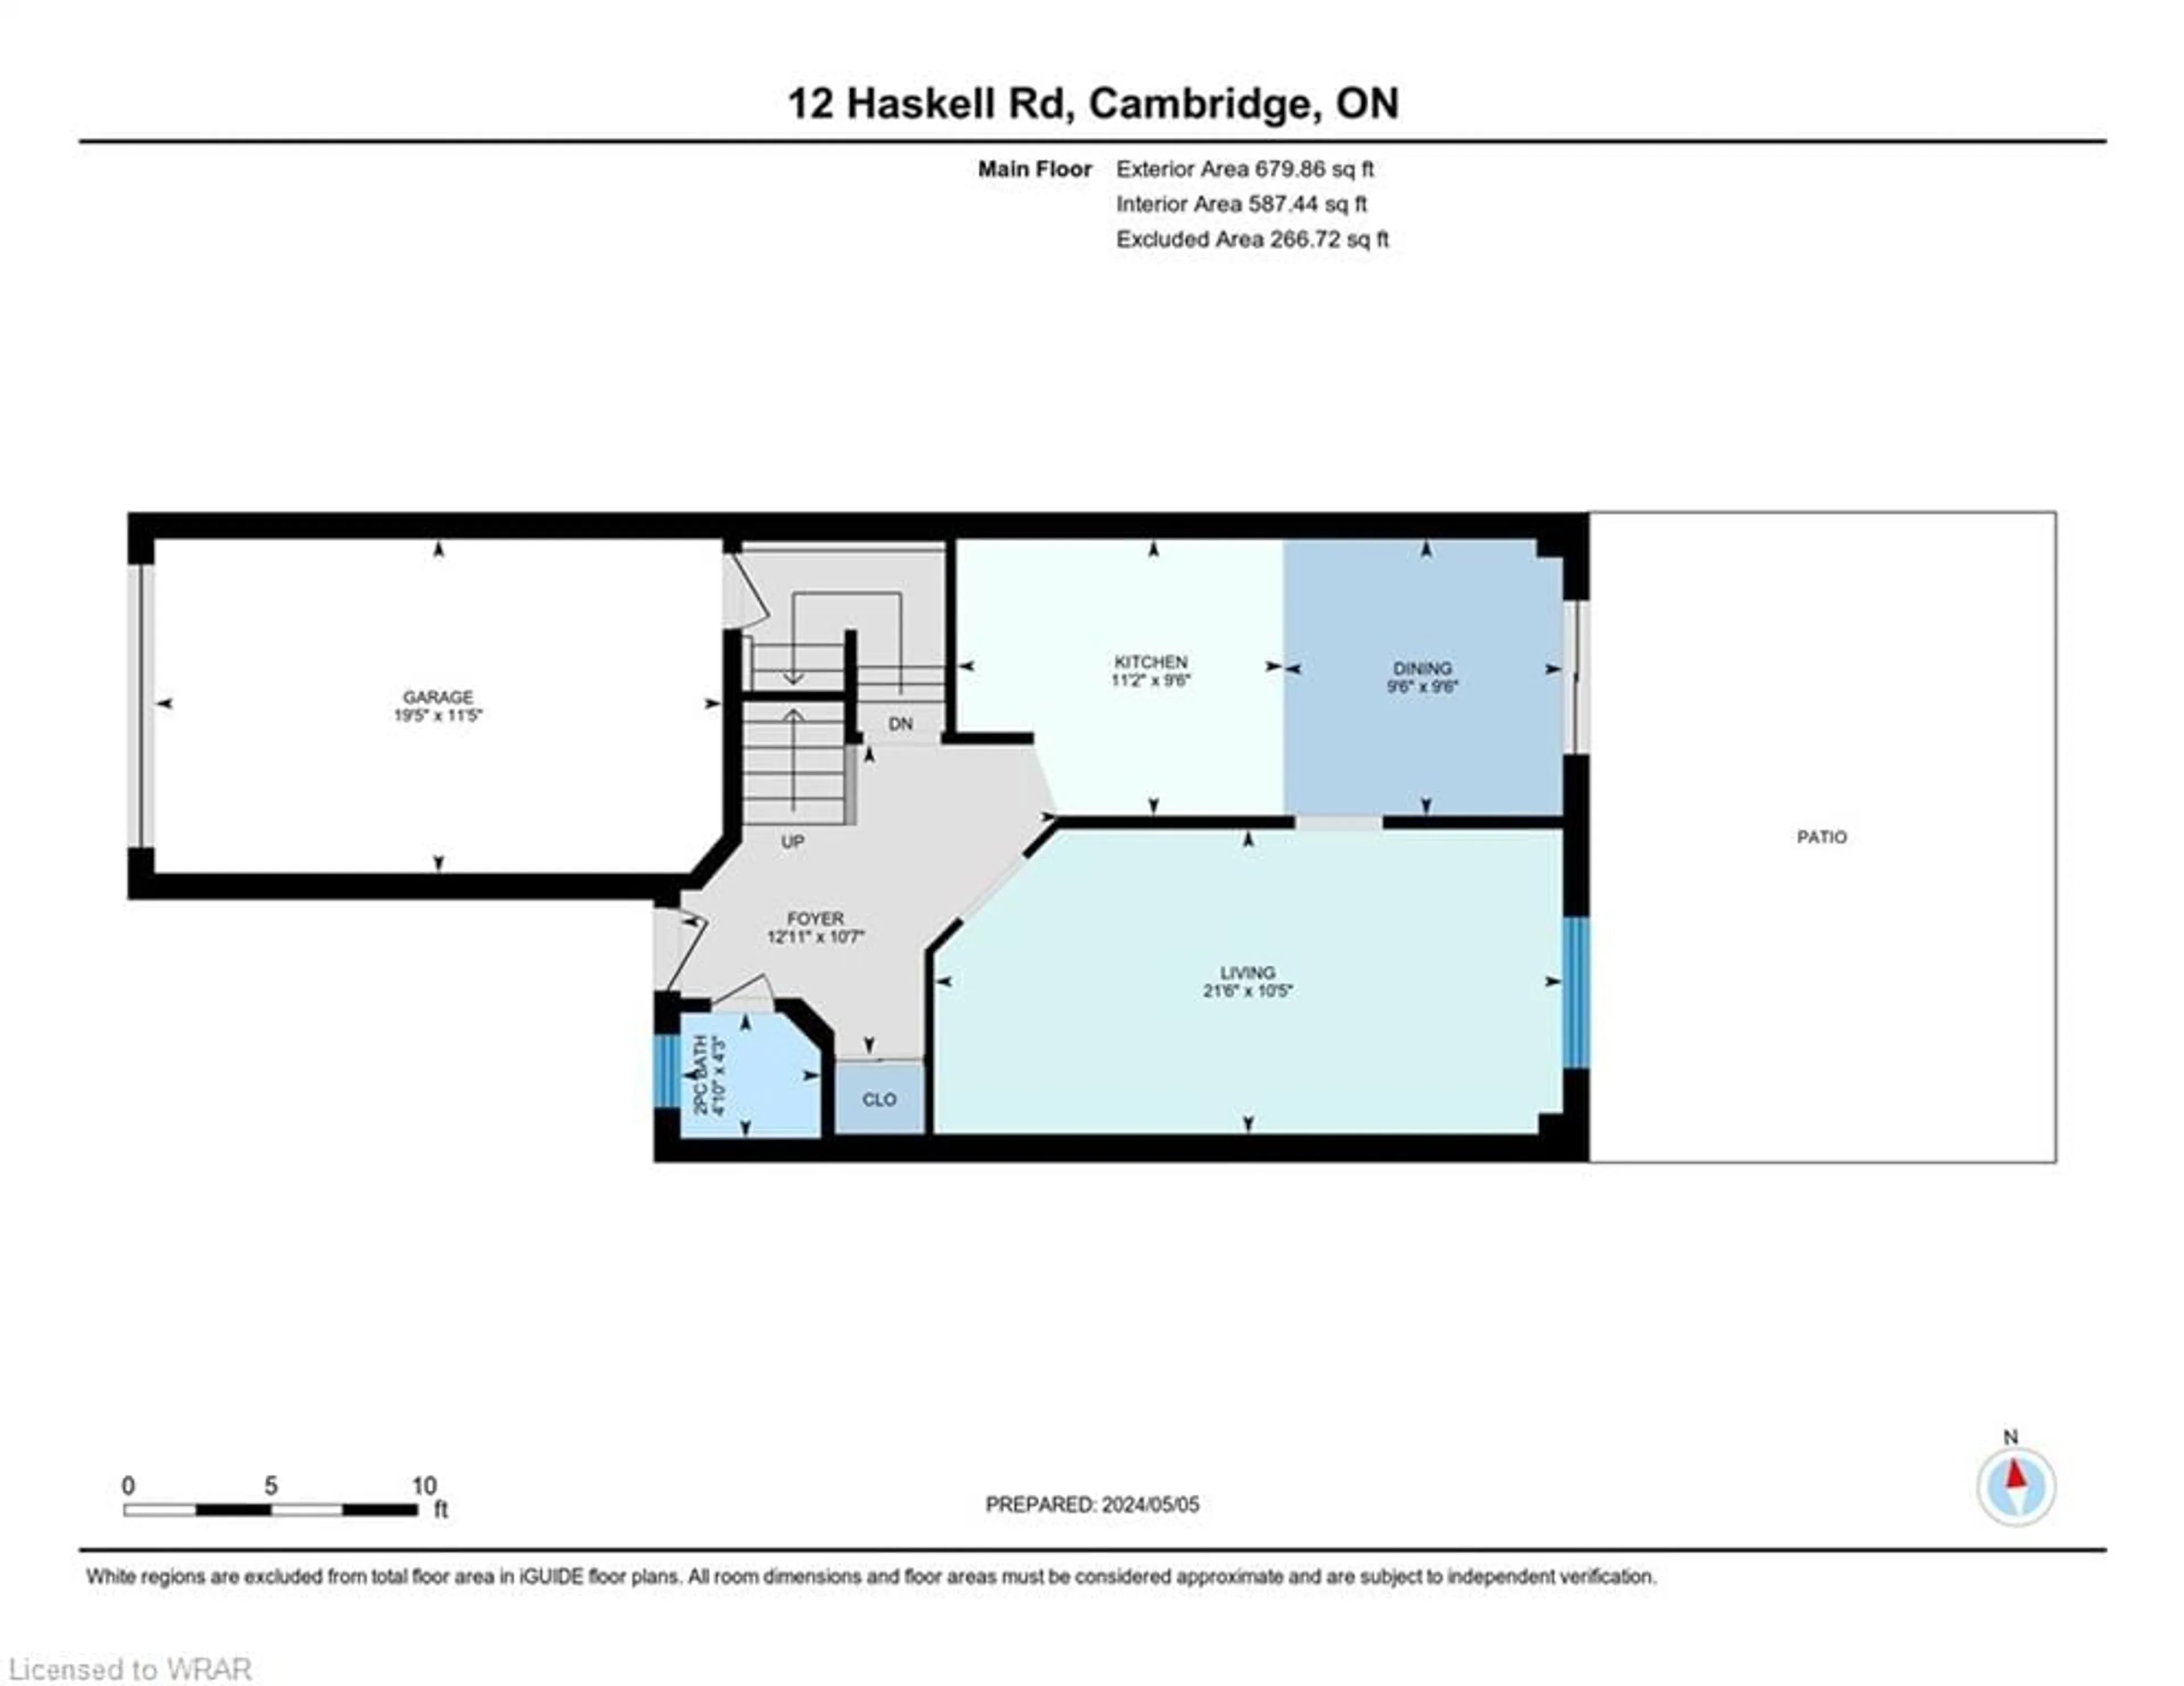 Floor plan for 12 Haskell Rd, Cambridge Ontario N1P 1E3